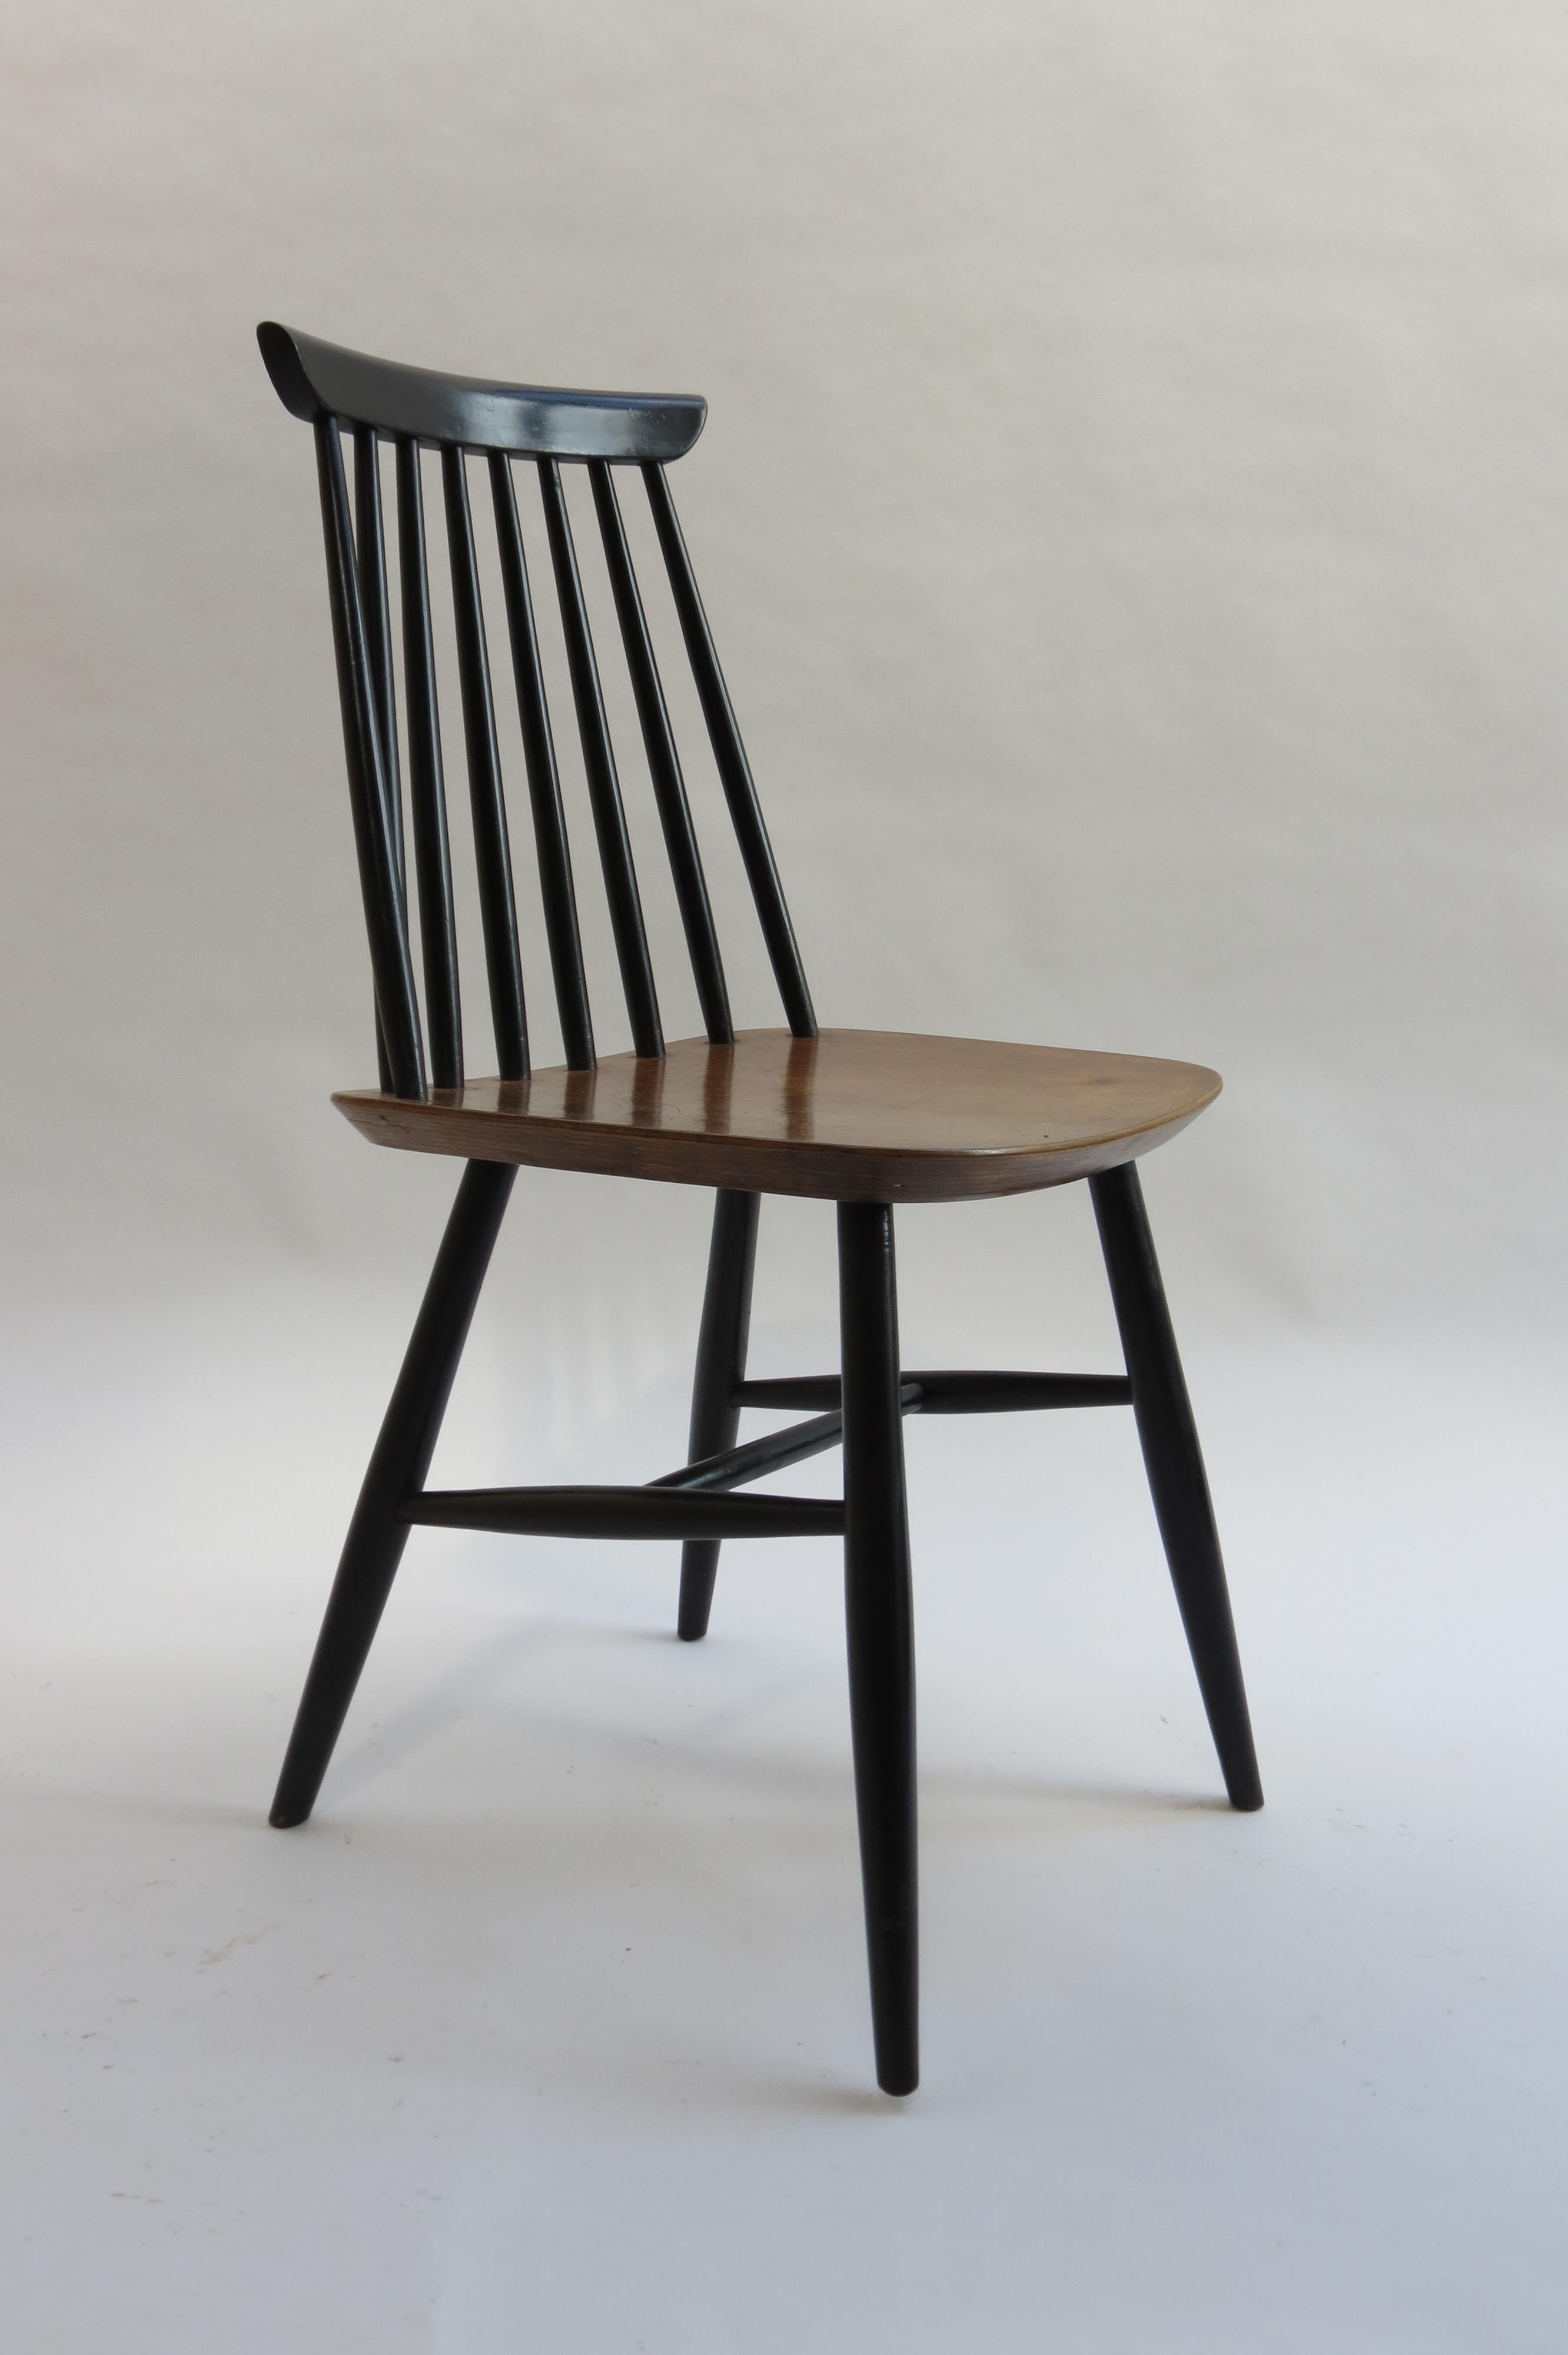 Esszimmerstuhl von sehr guter Qualität im Stil von Imari Tapiovaara. Entworfen in den 1950er Jahren. Beine und Rückenspindeln aus ebonisierter Buche und nussbaumfurnierte Sitze.

In gutem Vintage-Zustand, durchgehend sehr schön patiniert. Mit